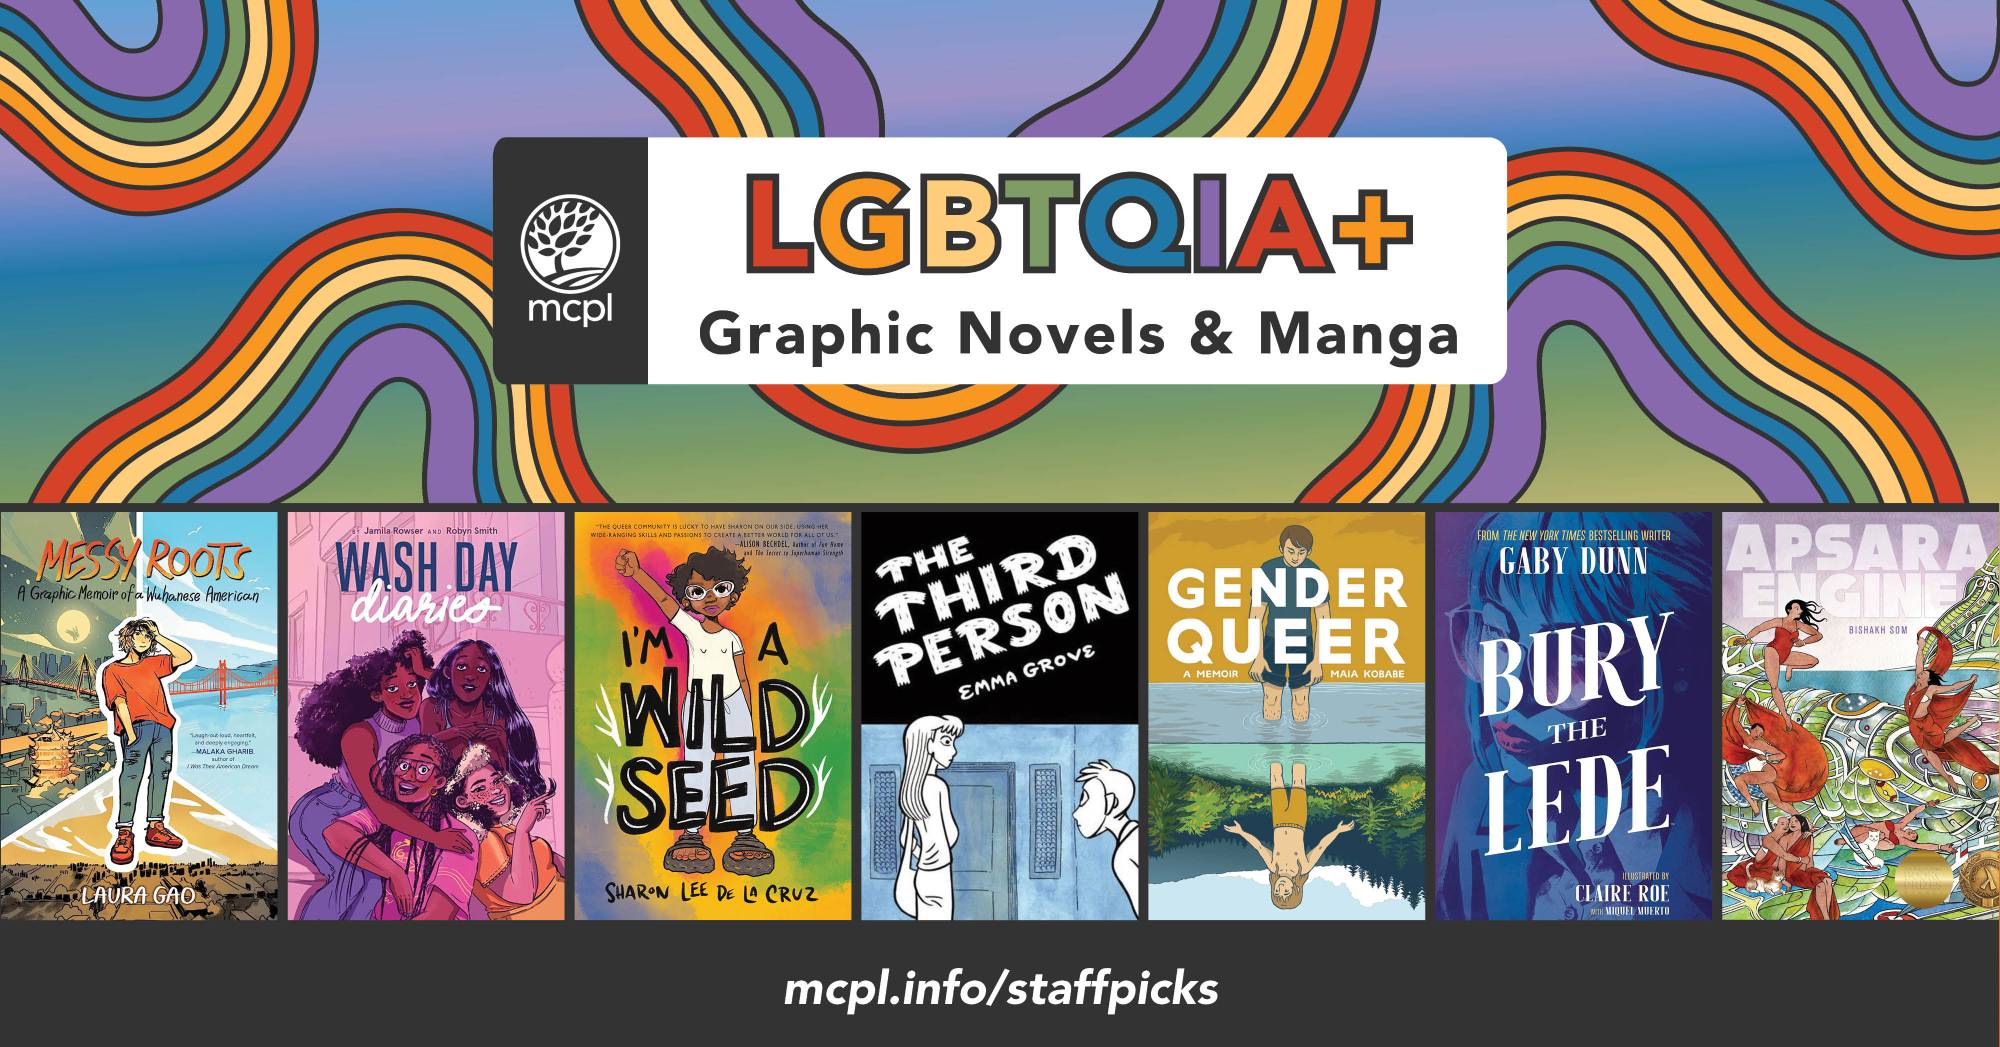 LGBTQIA+ Graphic Novels & Manga